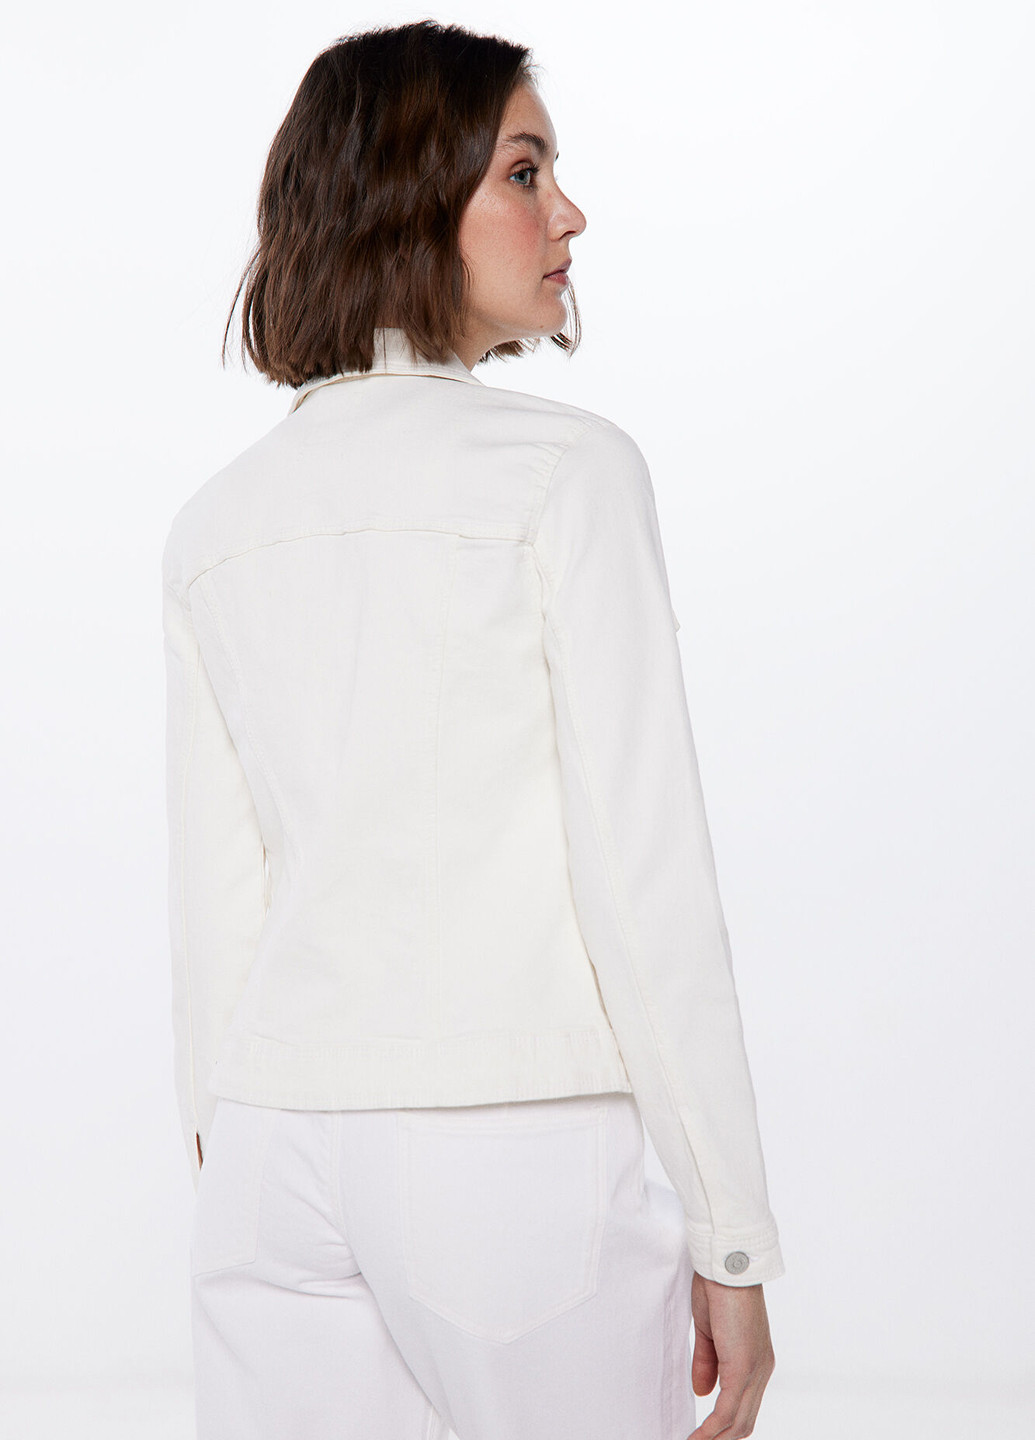 Белая демисезонная куртка куртка-пиджак Springfield